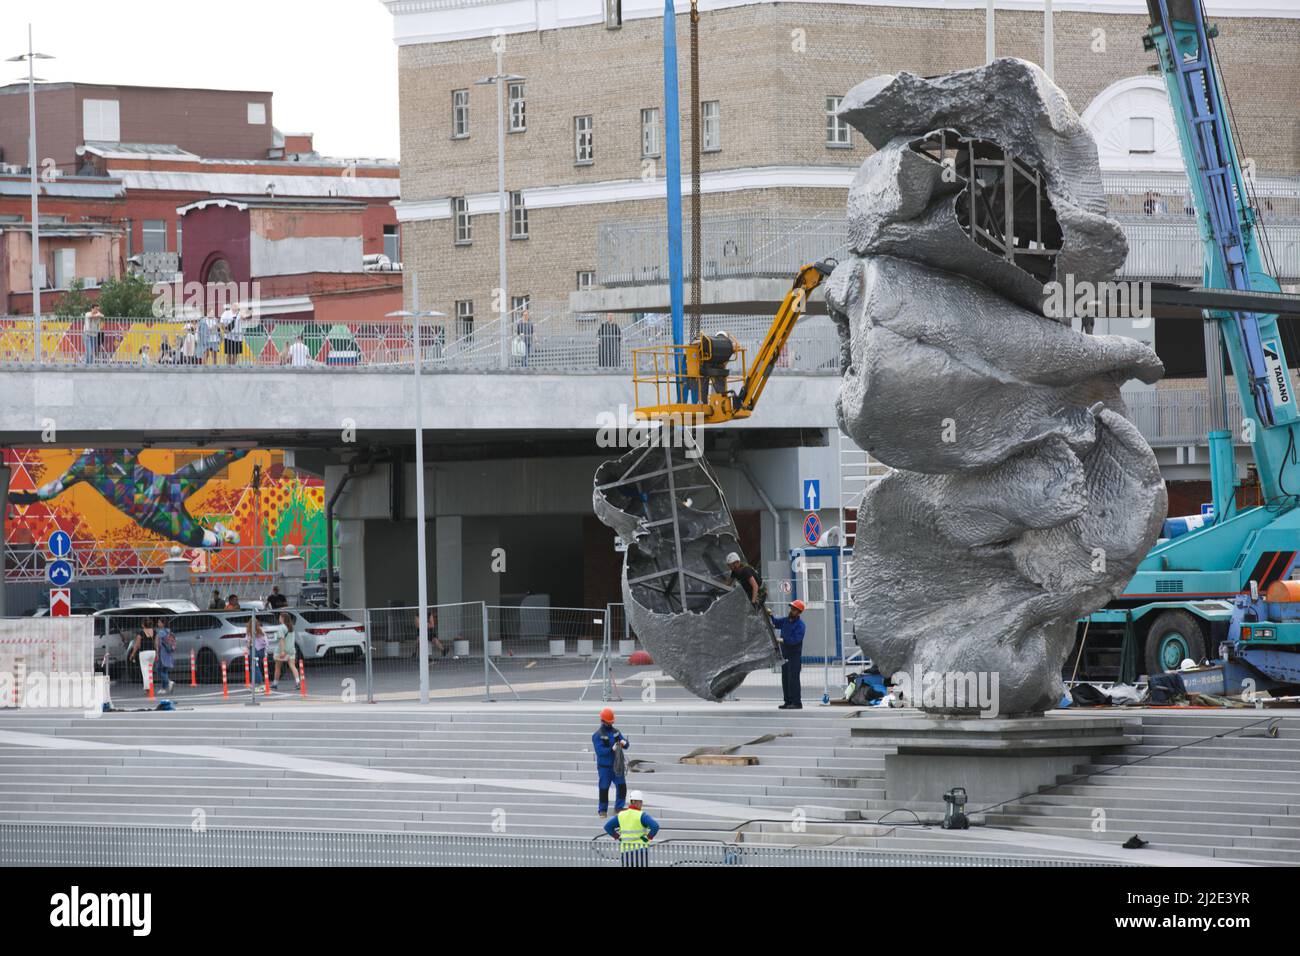 Mosca, Russia, 14 agosto 2021: La scultura dell'artista svizzero Urs Fischer, chiamata Big Clay 4, è stata installata su Bototnaya Naberezhnaya. Monumentale mod Foto Stock